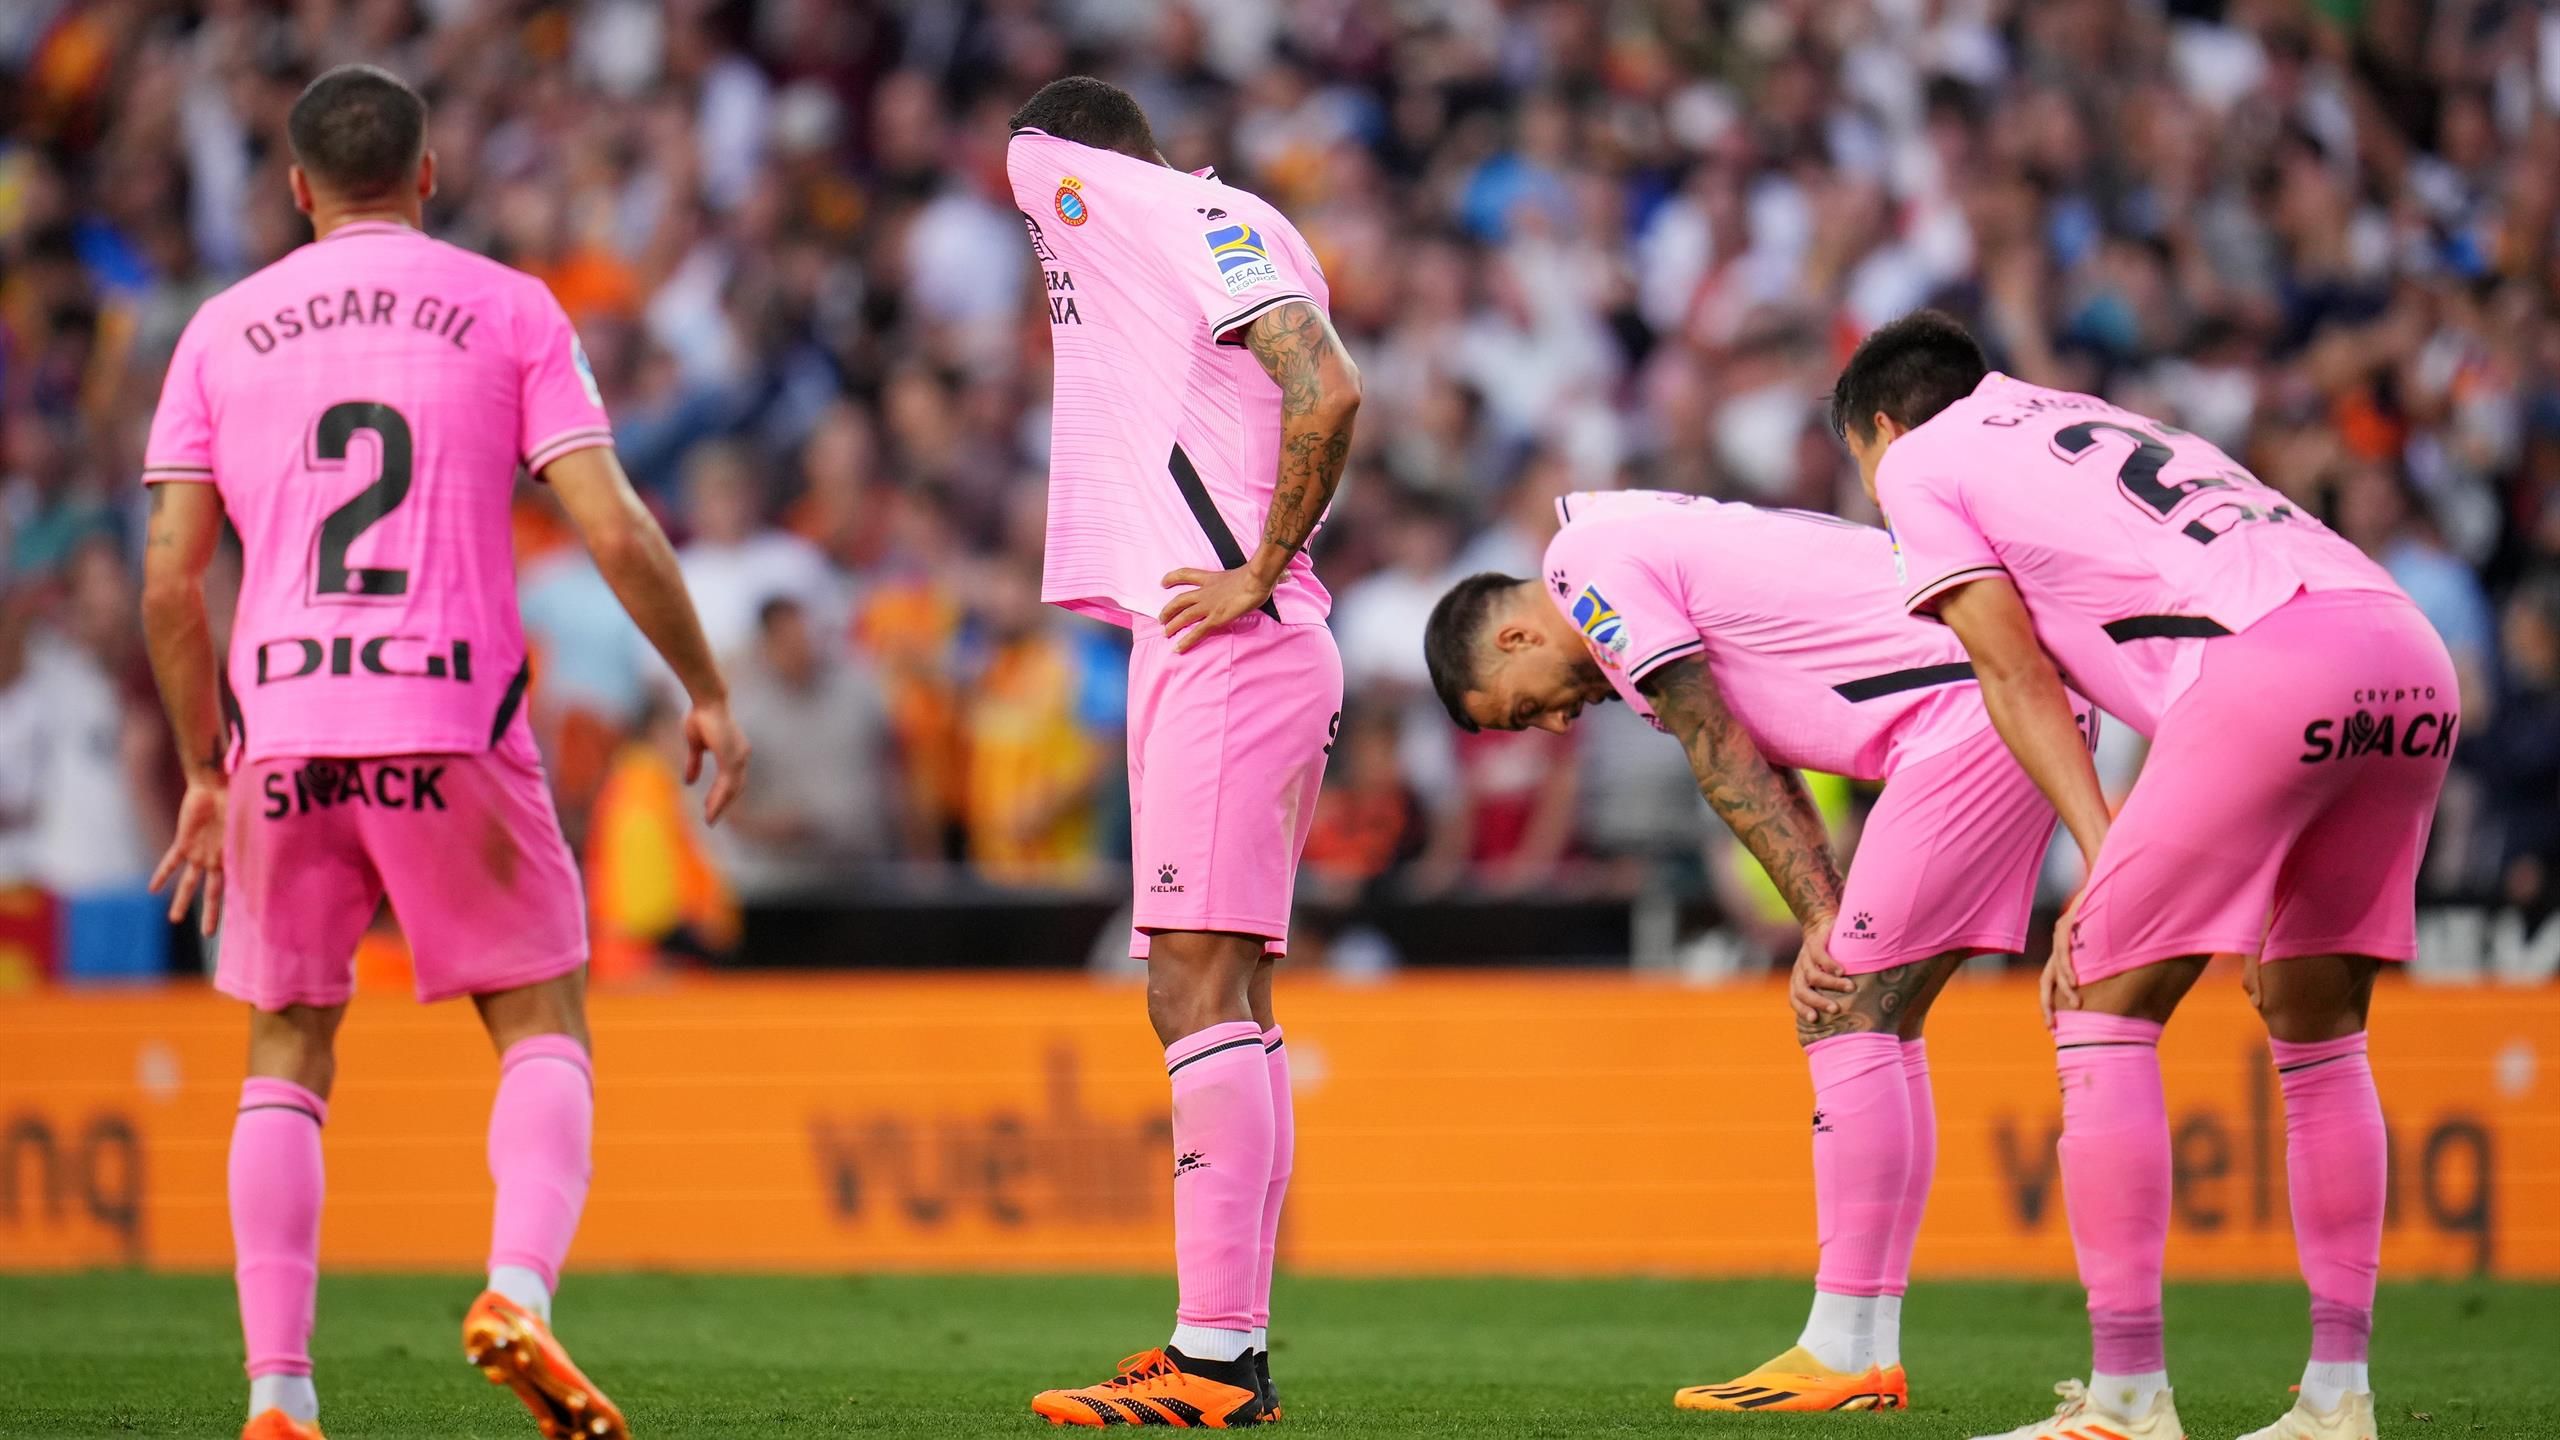 La Liga Espanyol Barcelona steht als Absteiger fest - Sechskampf gegen den Abstieg am letzten Spieltag